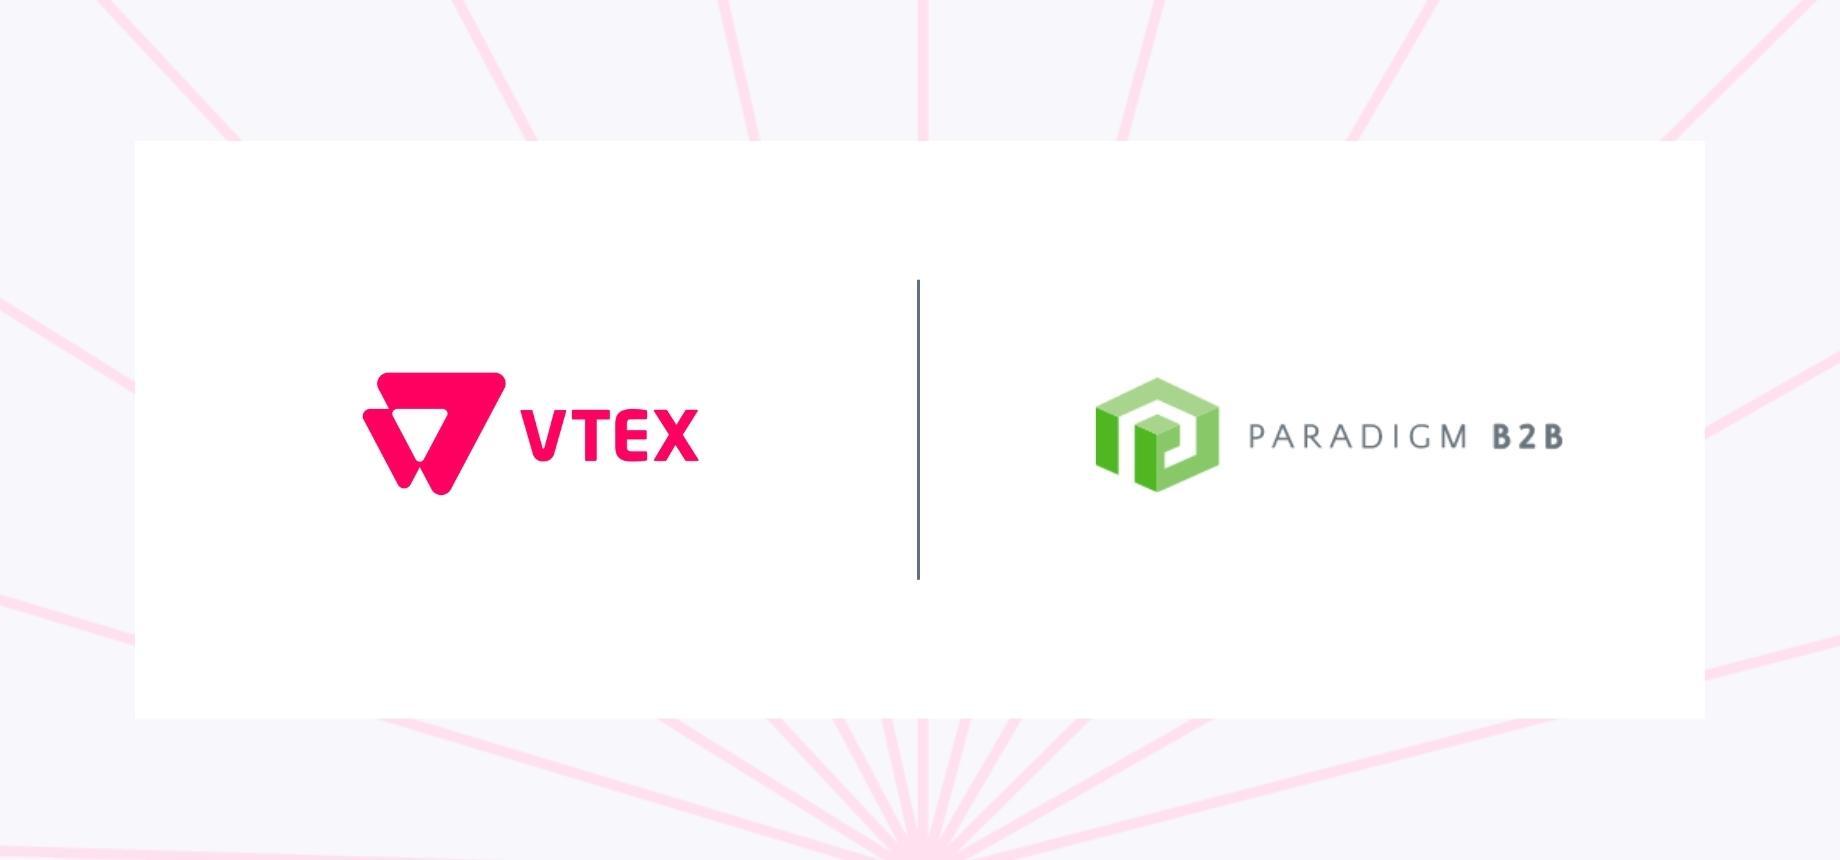 VTEX obtiene medallas en todas las 12 categorías del Paradigm B2B Midmarket Combine 2022